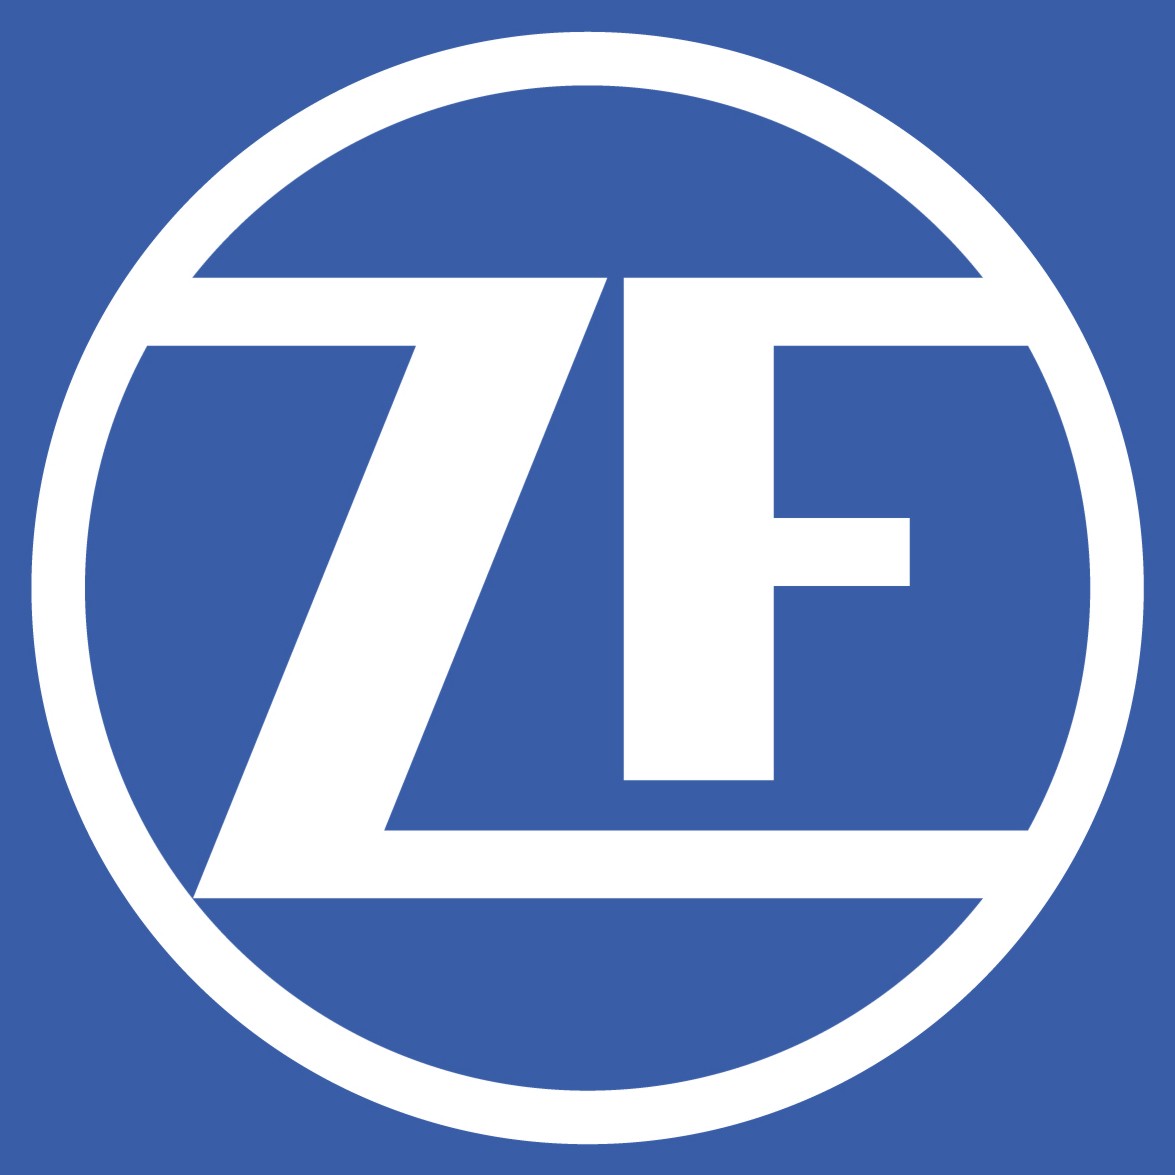 Centro Assistenza Invertitori Zf